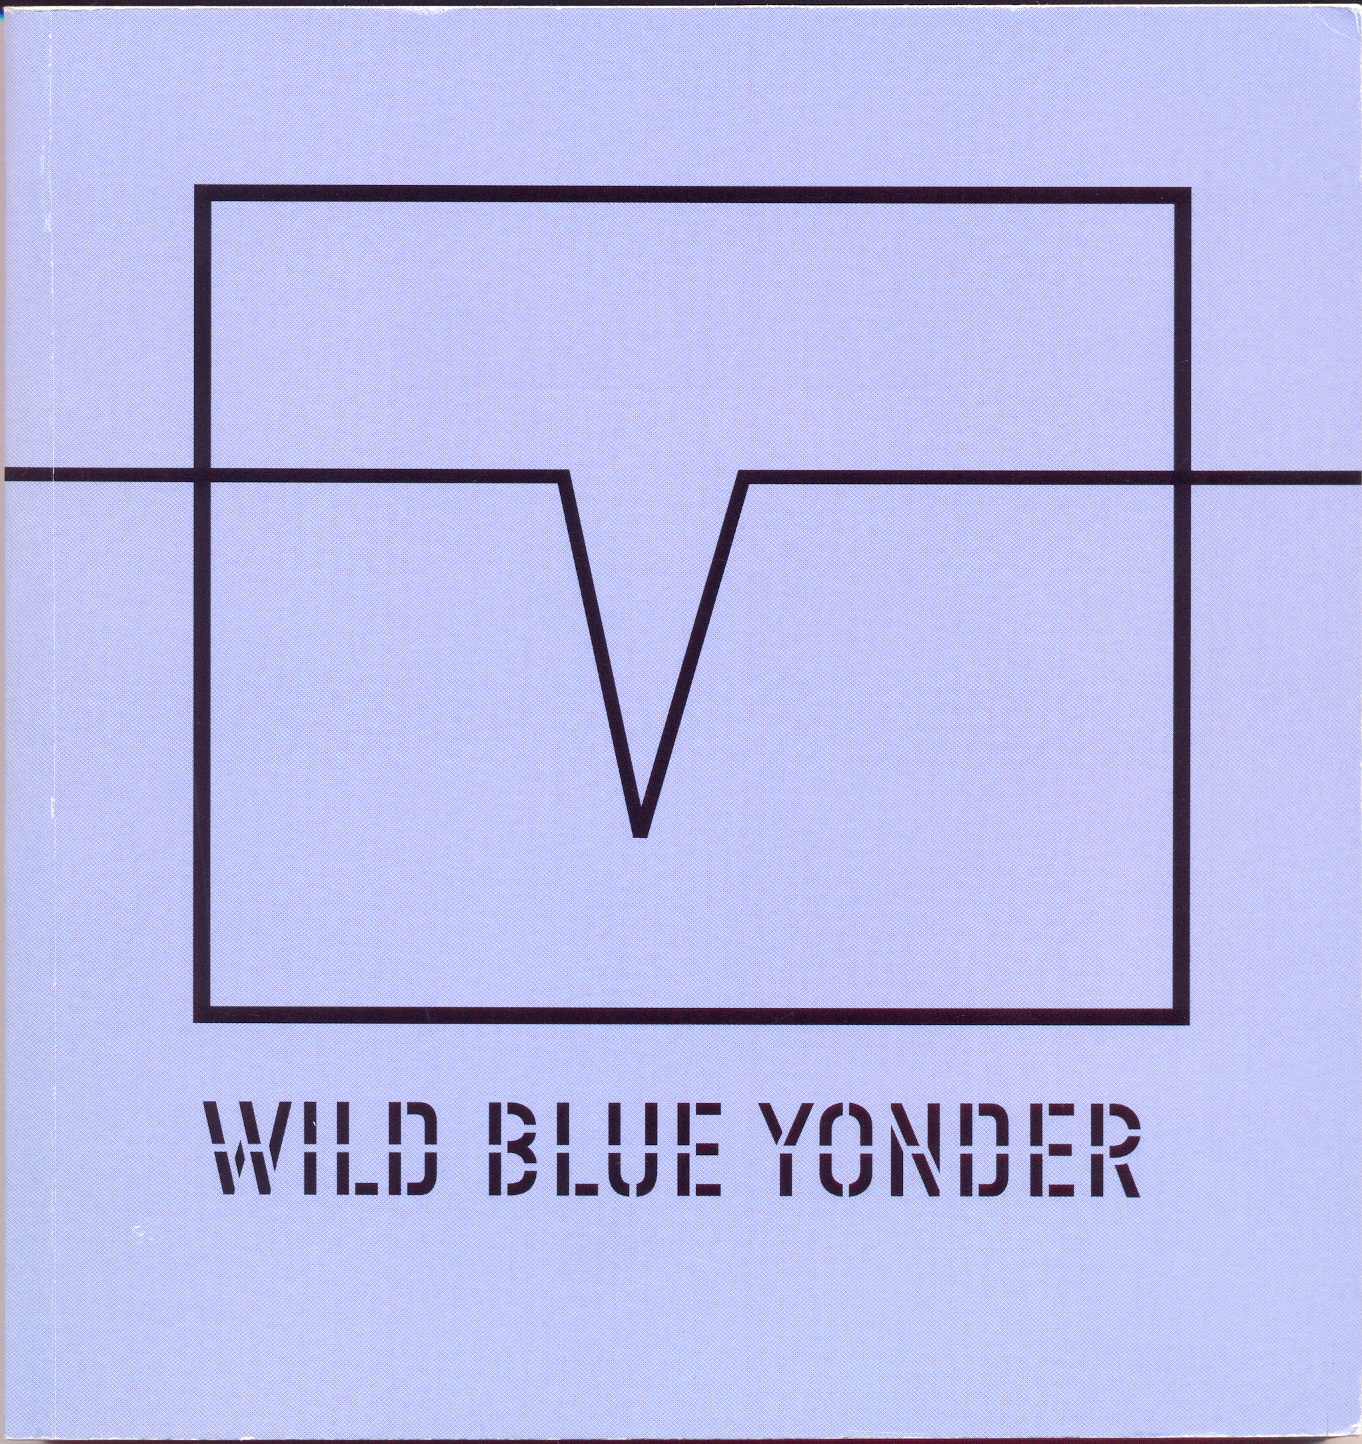 Wild blue yonder